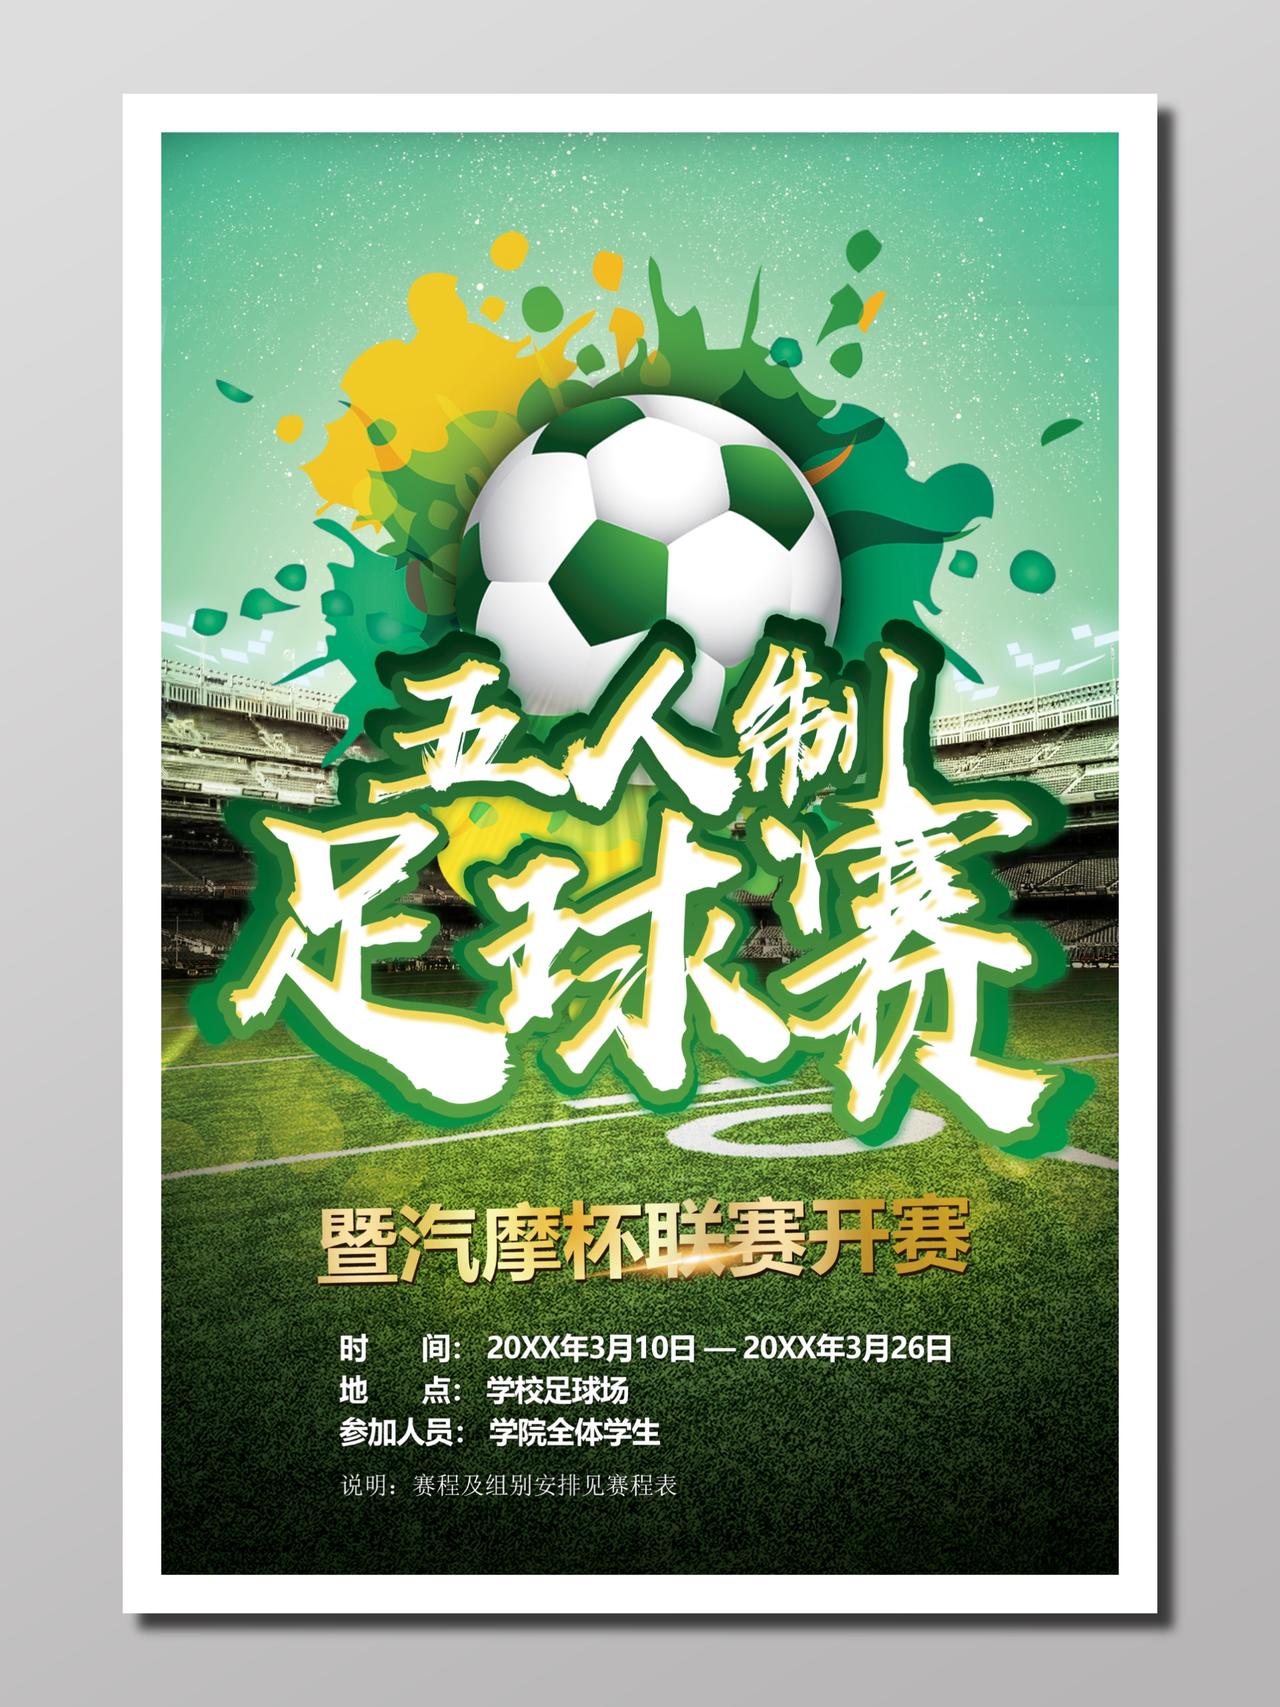 足球运动足球比赛透明碧绿赛场足球联赛五人制校园宣传海报设计